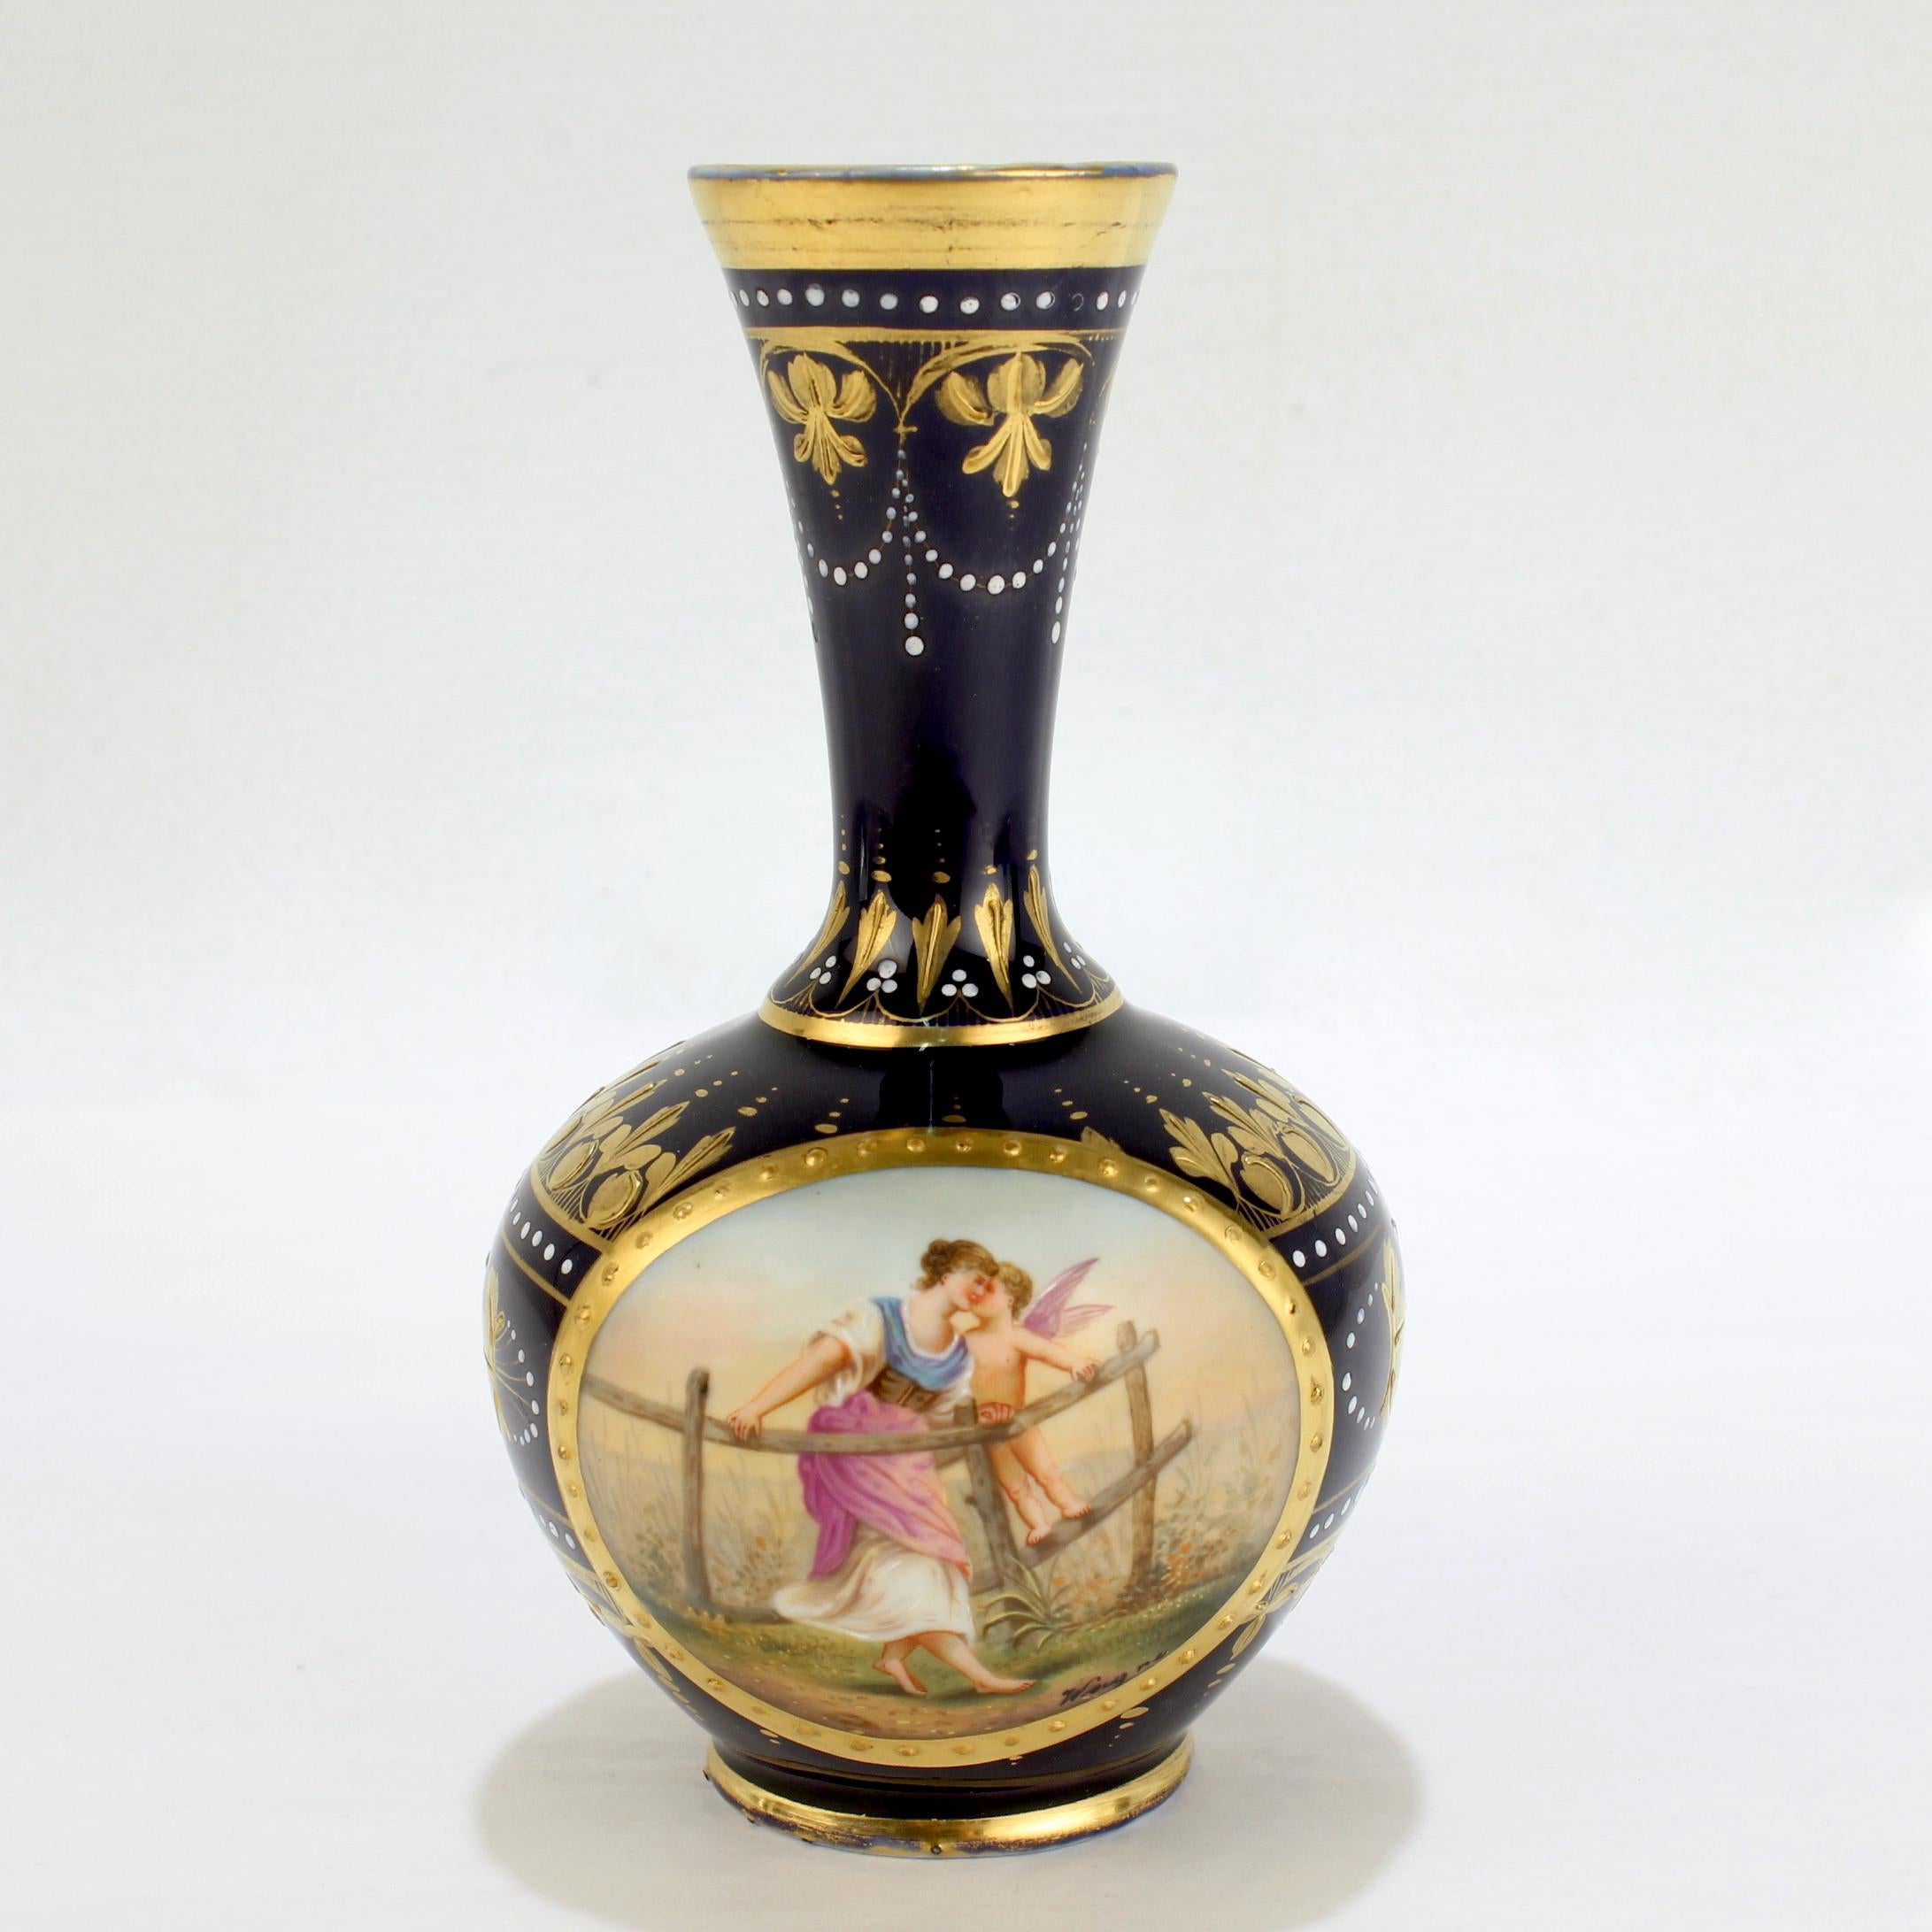 A signed antique Royal Vienna style porcelain vase.

Entitled: 